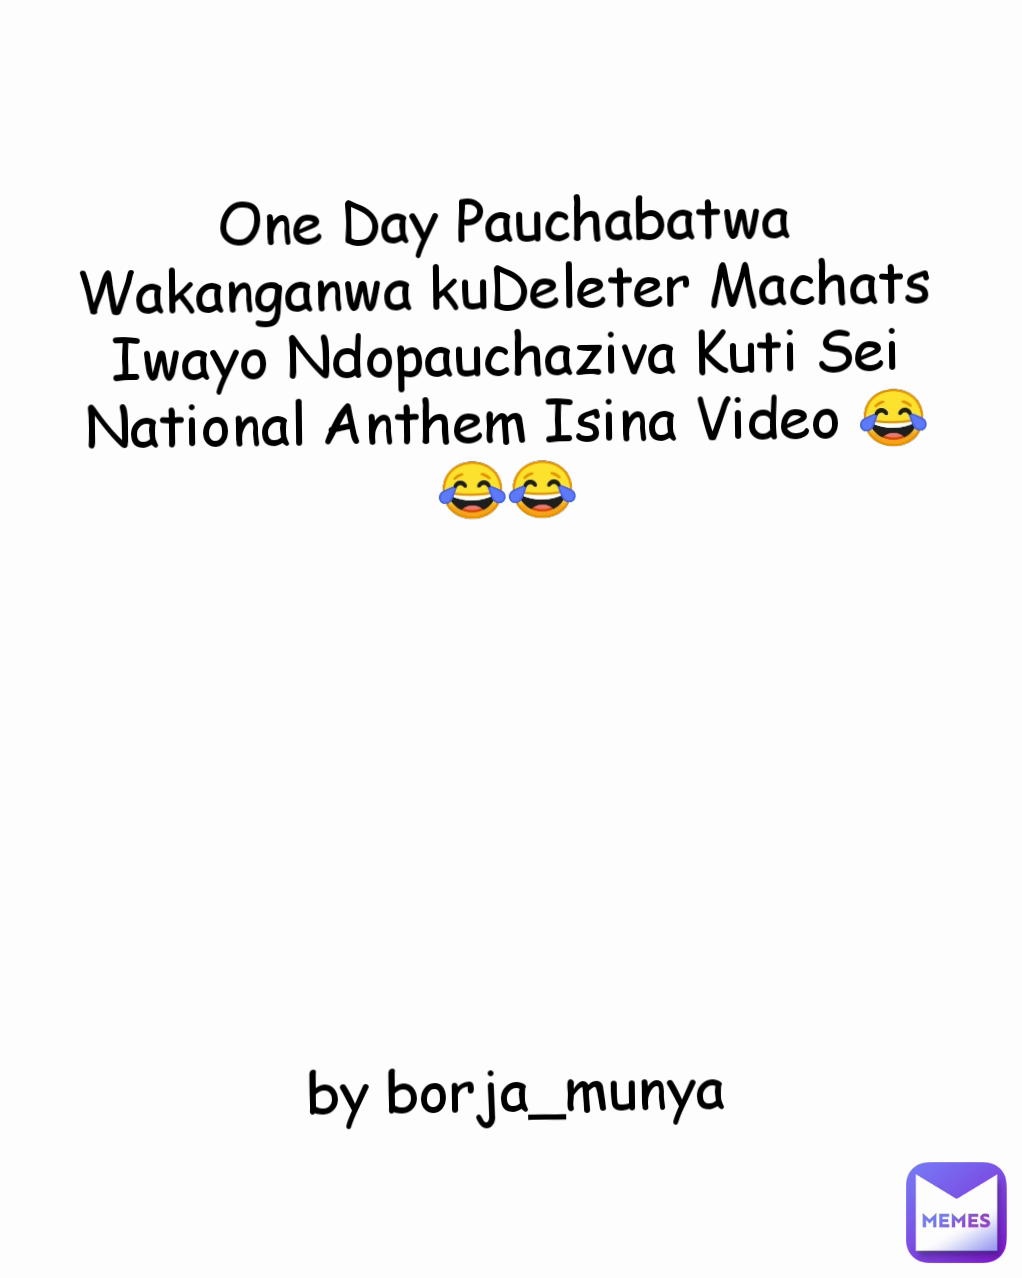 One Day Pauchabatwa Wakanganwa kuDeleter Machats Iwayo Ndopauchaziva Kuti Sei National Anthem Isina Video 😂😂😂








by borja_munya